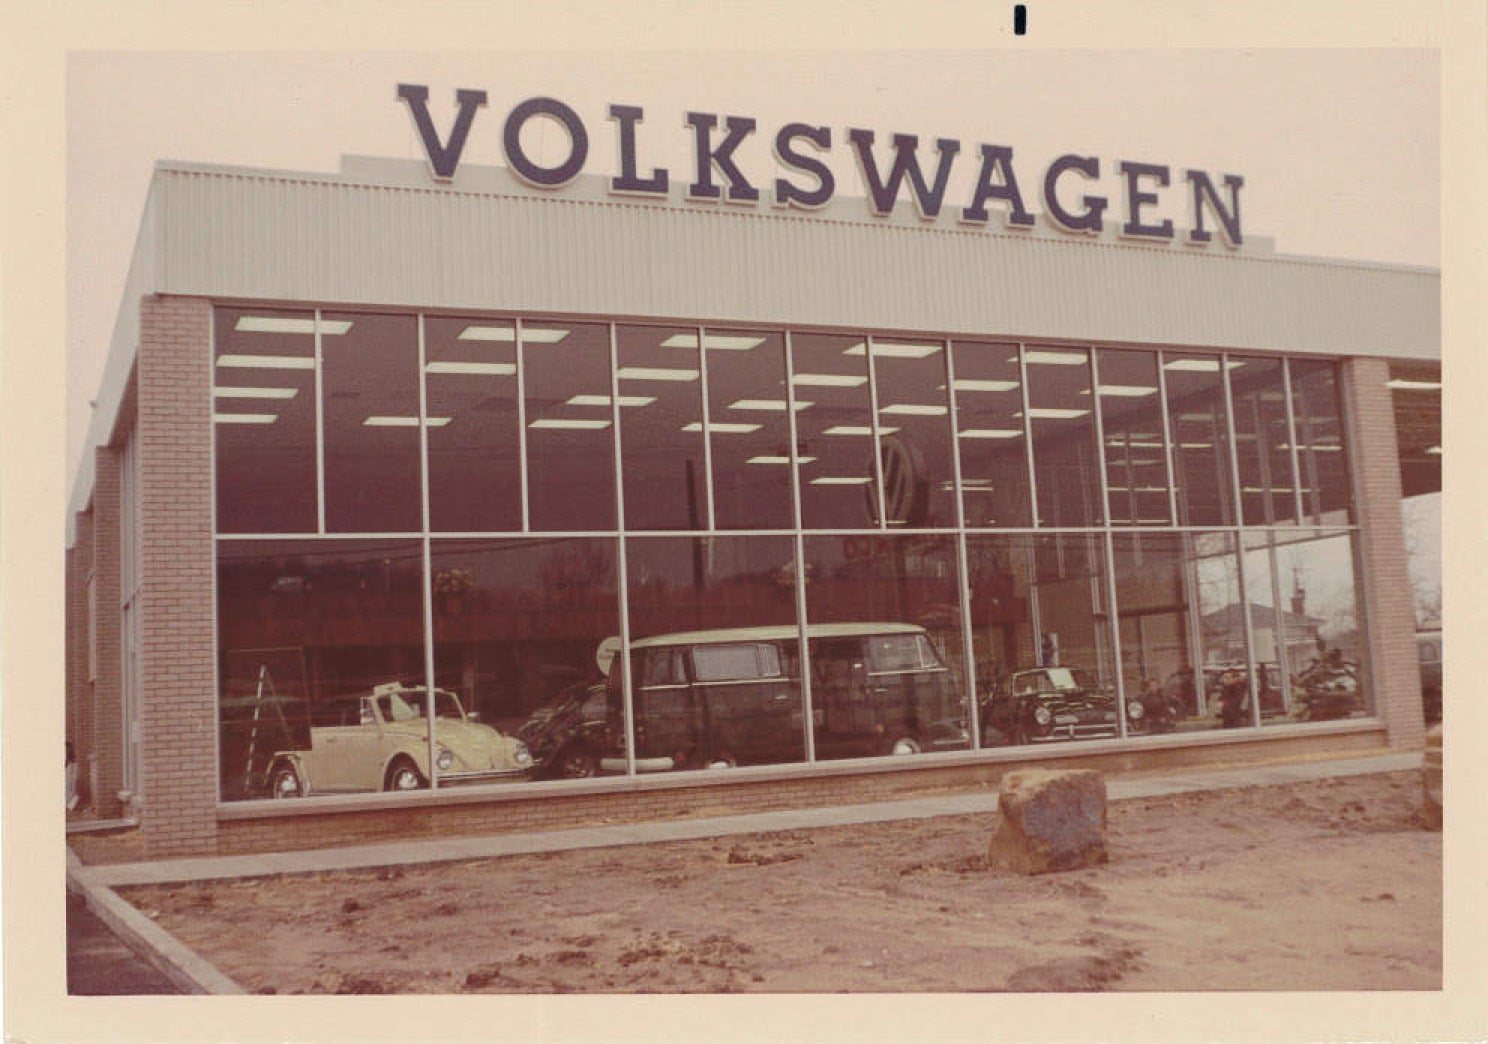 The Original Neil Huffman Volkswagen